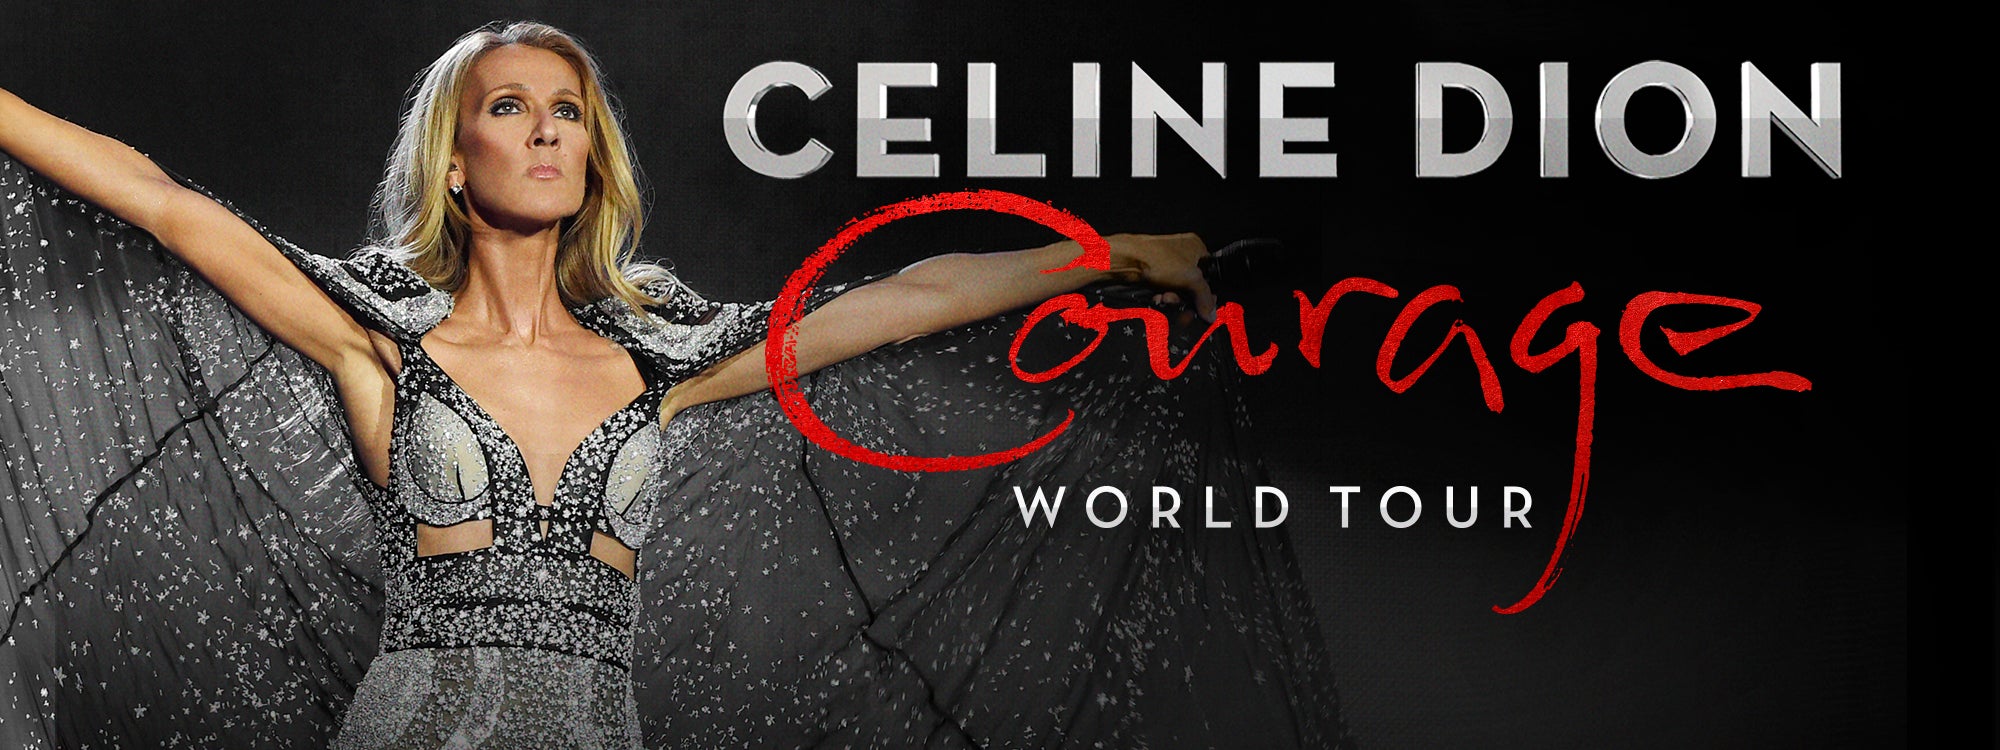 Celine Dion - CANCELED